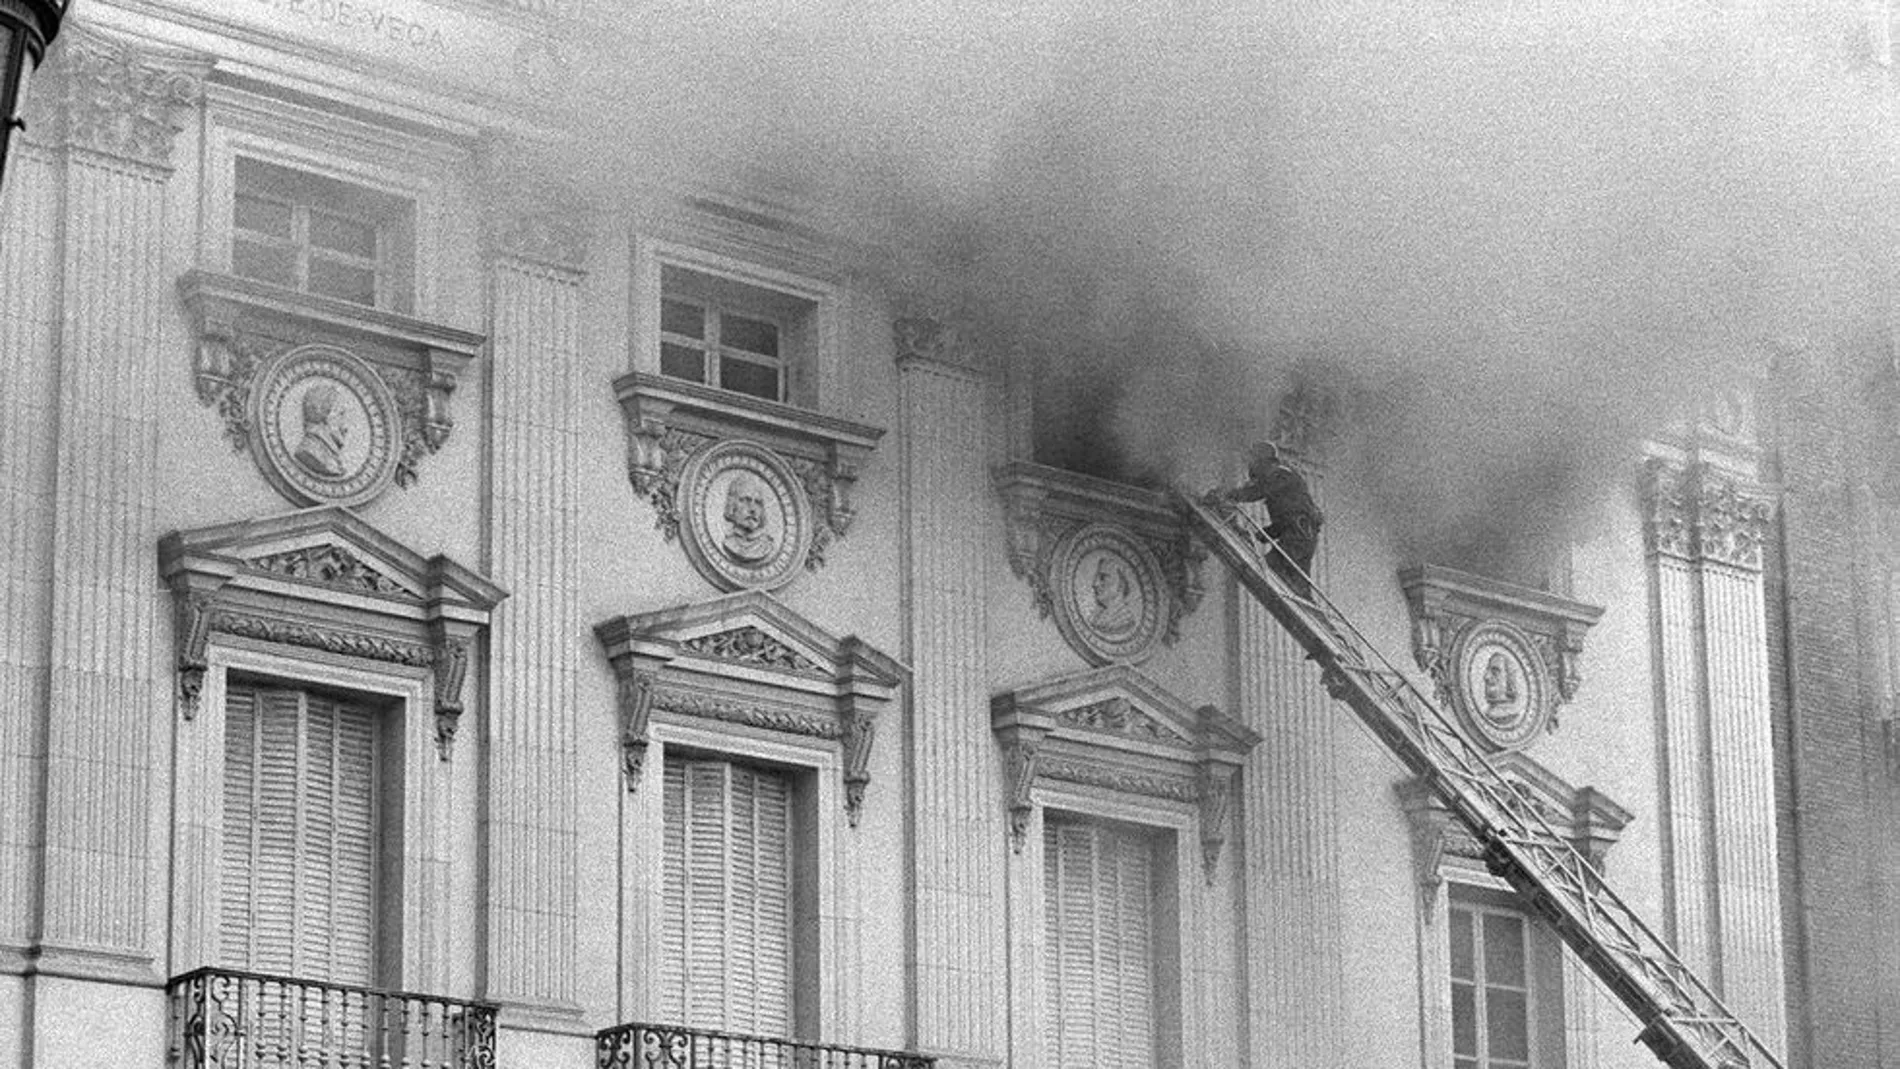 La fachada del Teatro Español durante su incendio en la tarde del domingo 19 de octubre de 1975